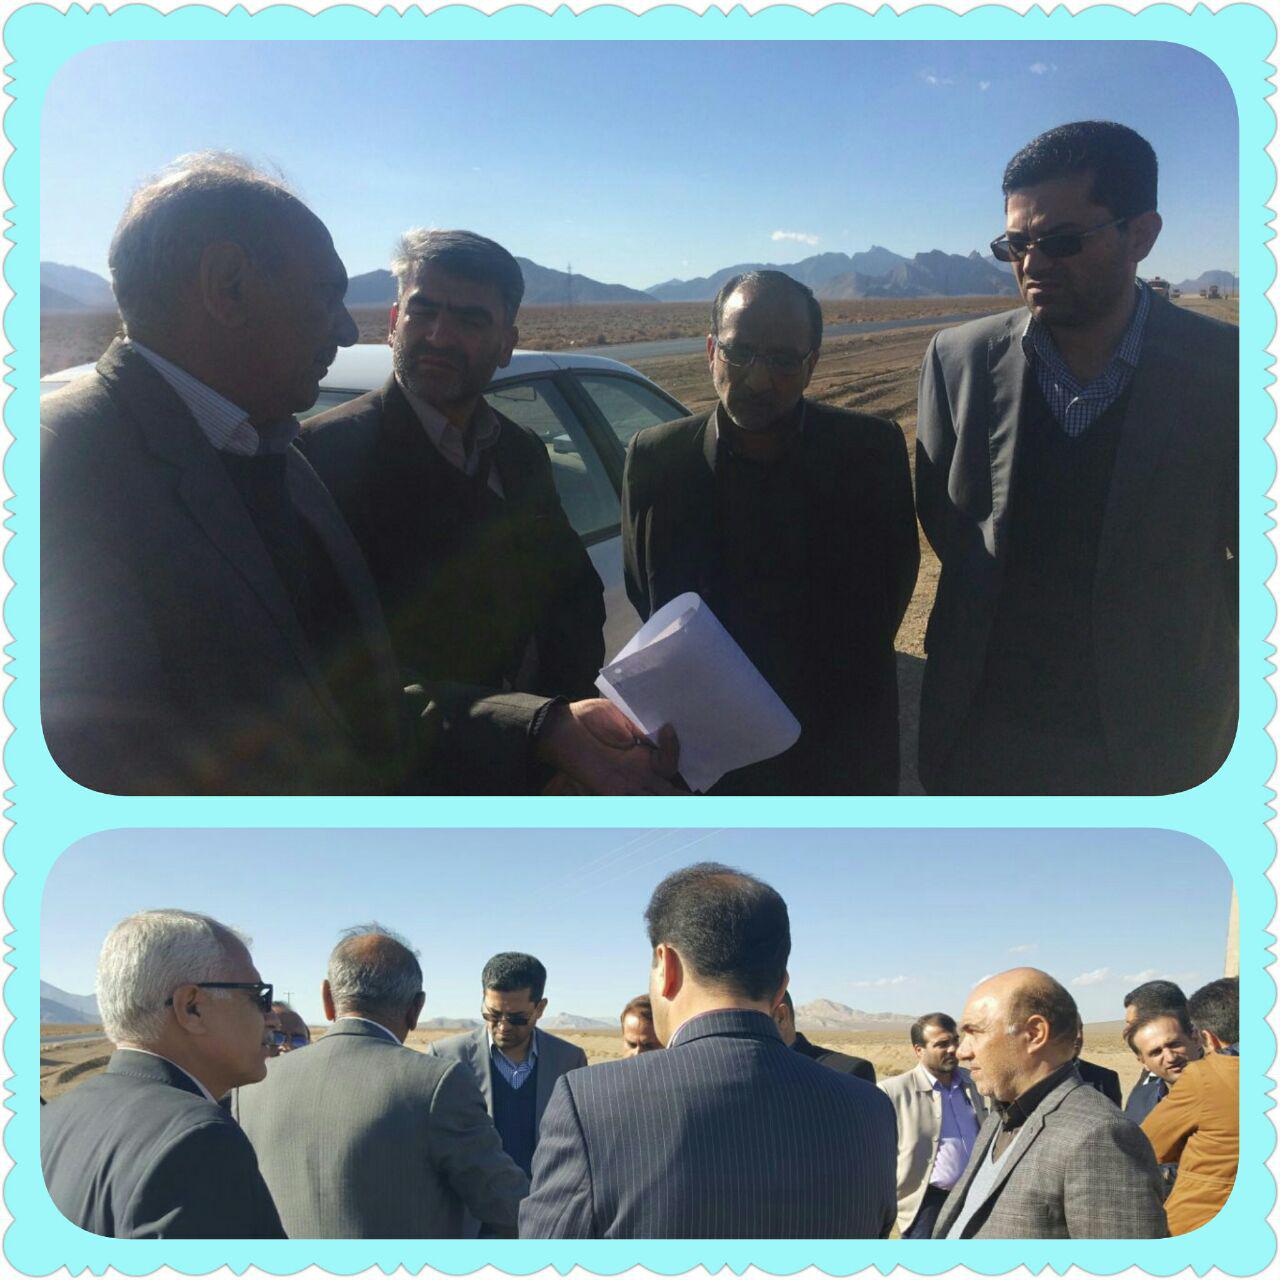 جلسه با فرماندار شهرستان نجف آباد و پیمانکار جاده جهت پیگیری روند ساخت جاده